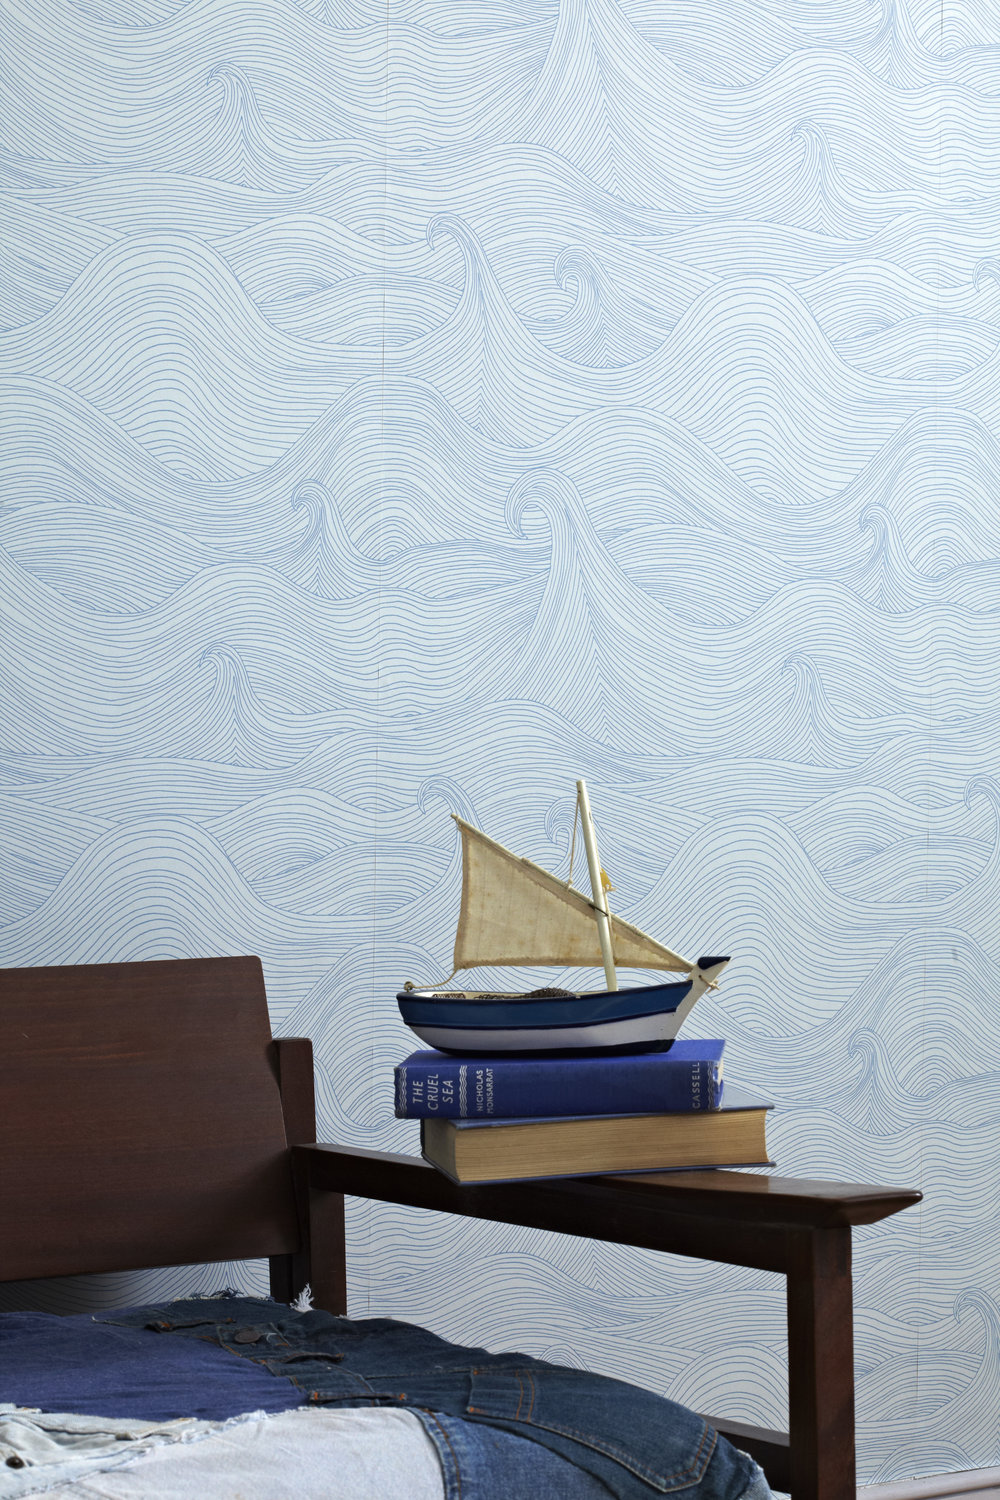 Seascape wave wallpaper abigail edwards â abigail edwards hand drawn wallpapers fabrics and accessories